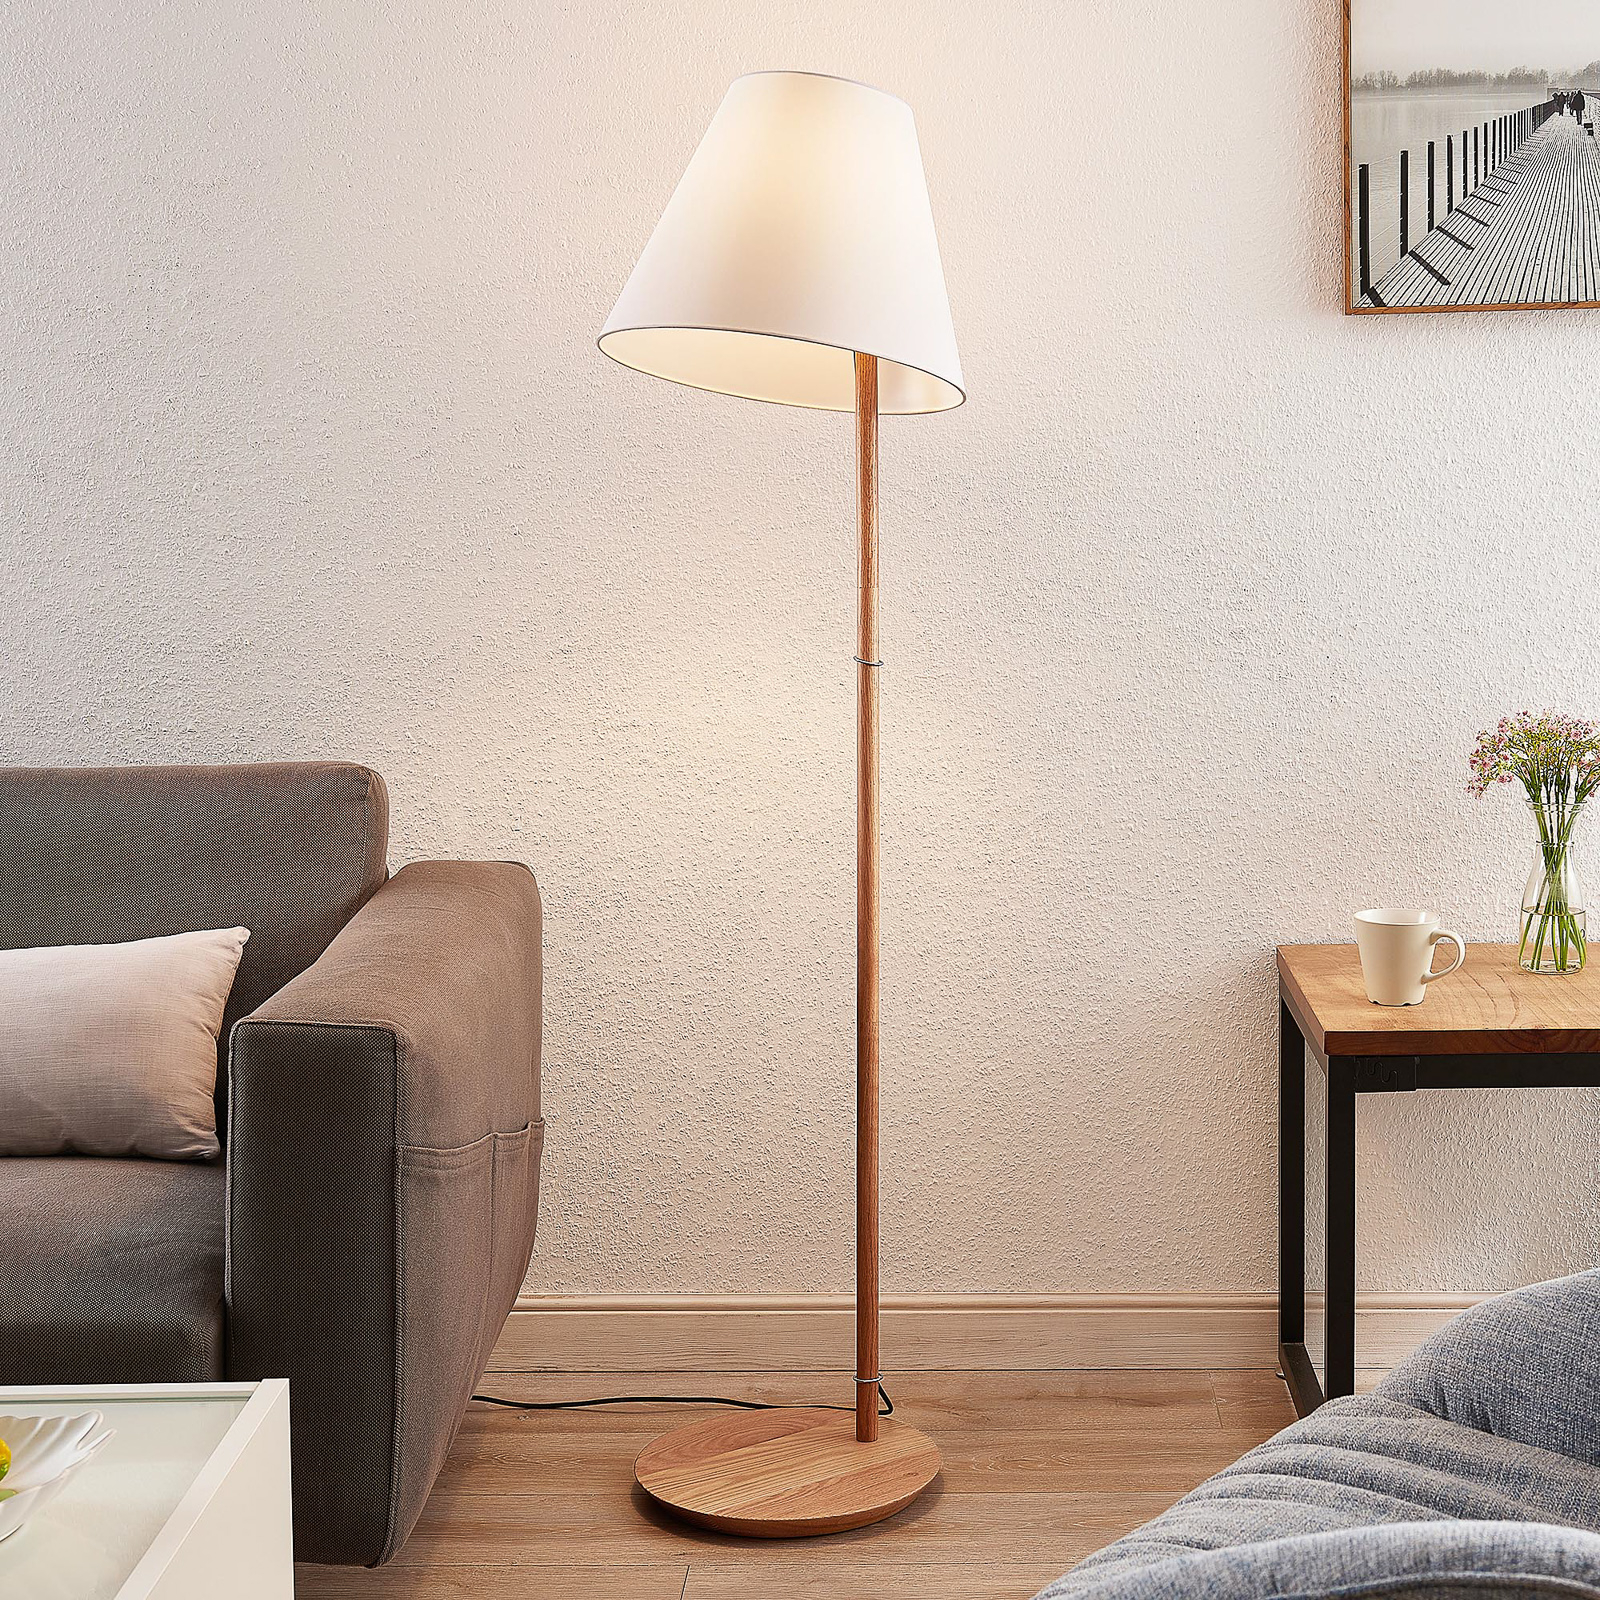 uitvoeren Kalksteen opblijven Lucande Jinda vloerlamp, houten frame, stof wit | Lampen24.be